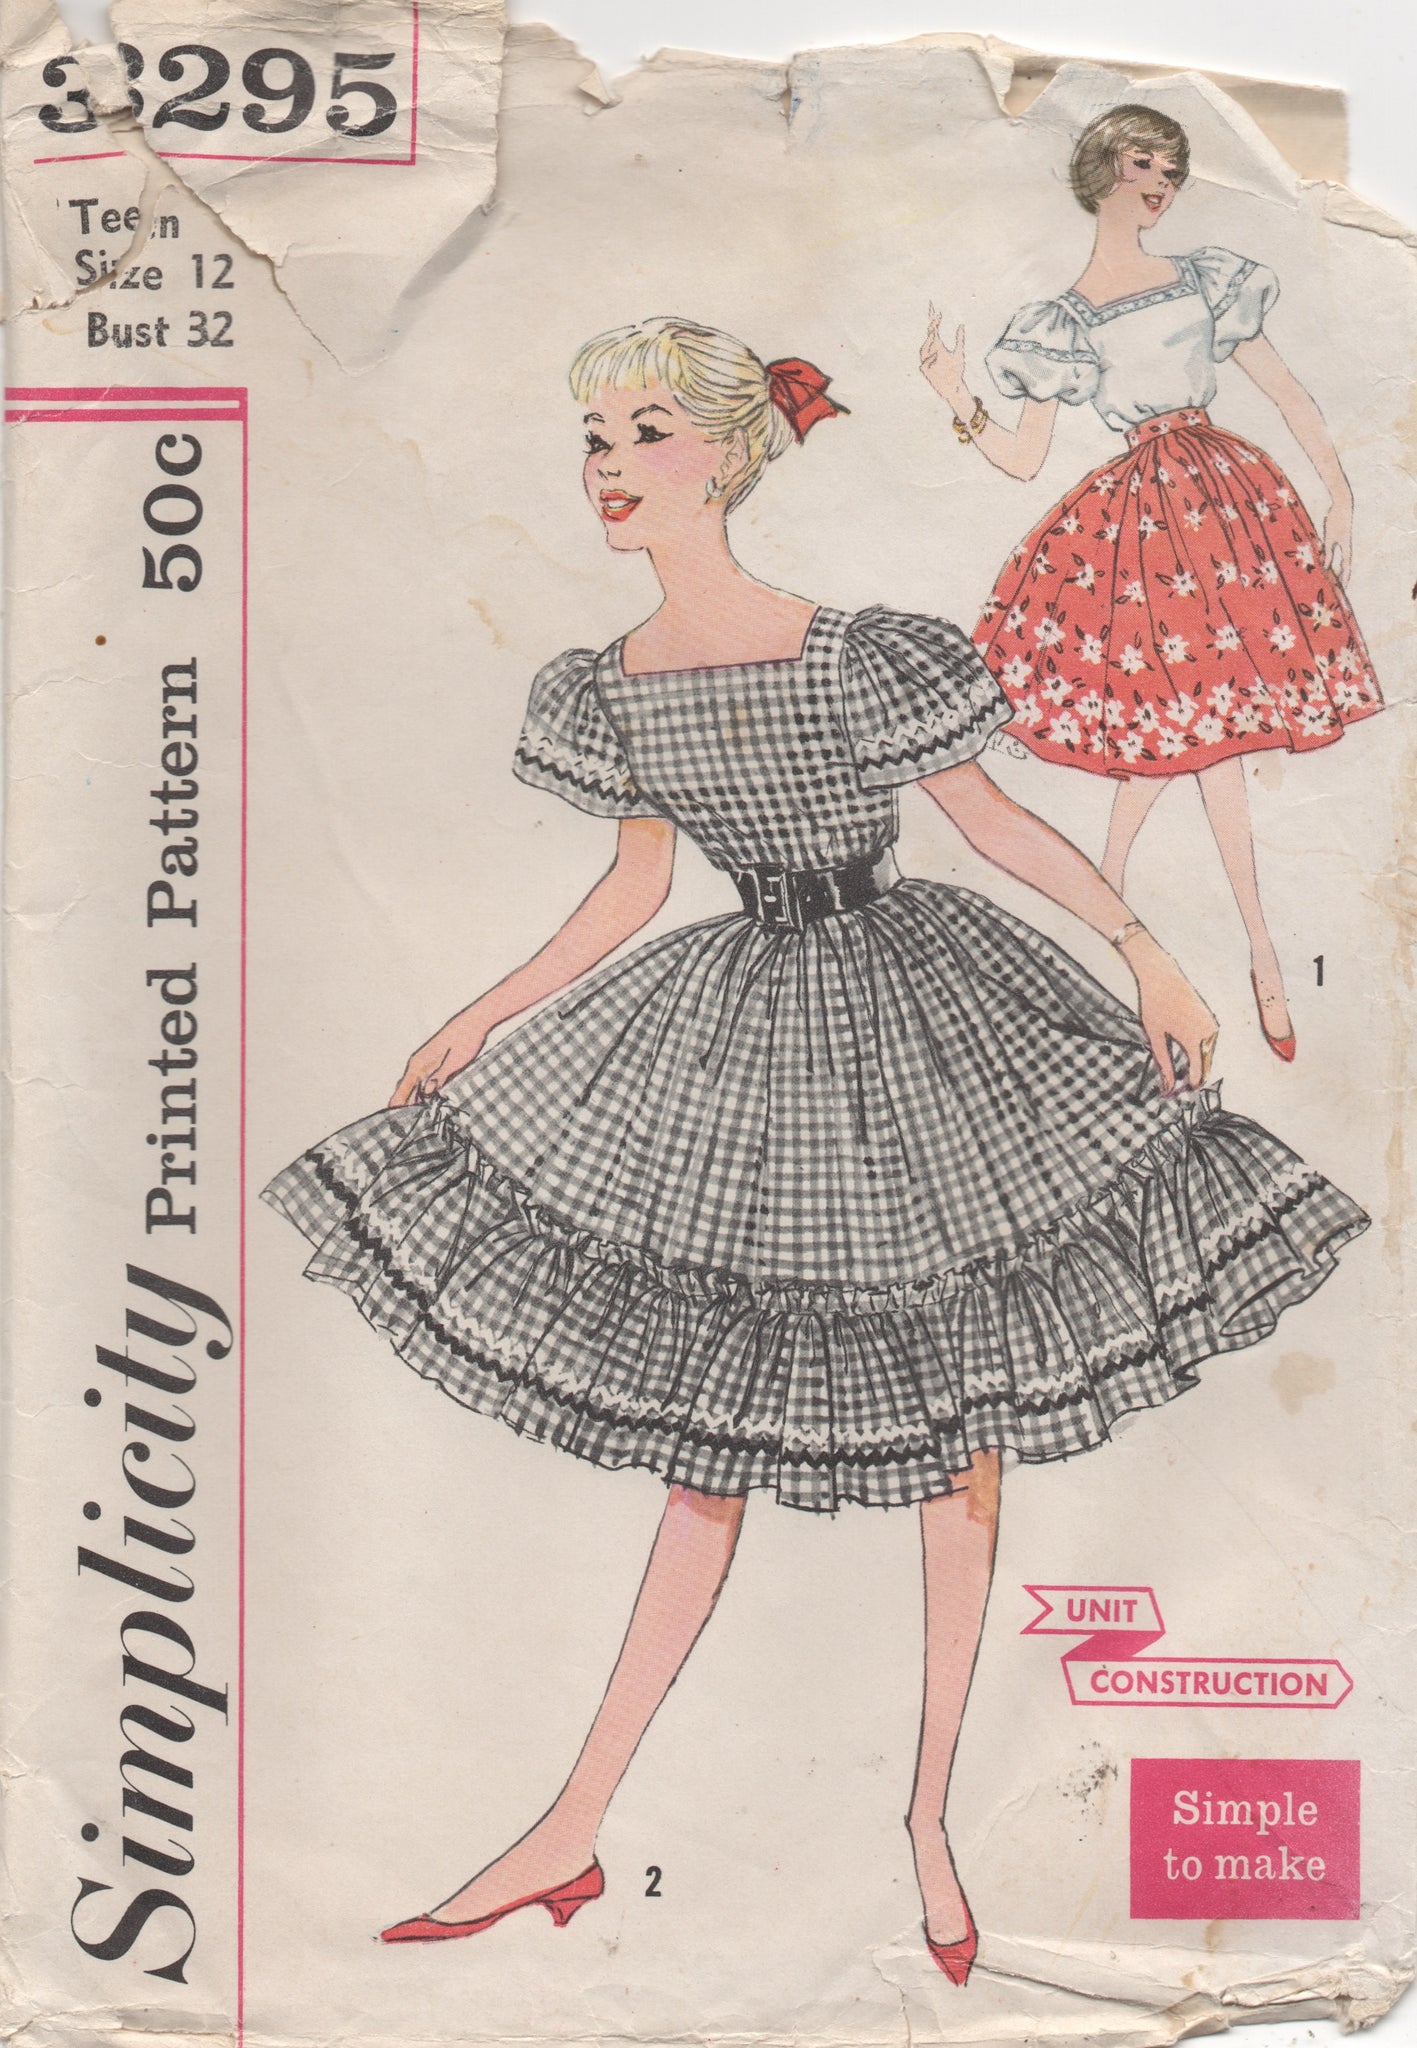 1950s ruffle skirt